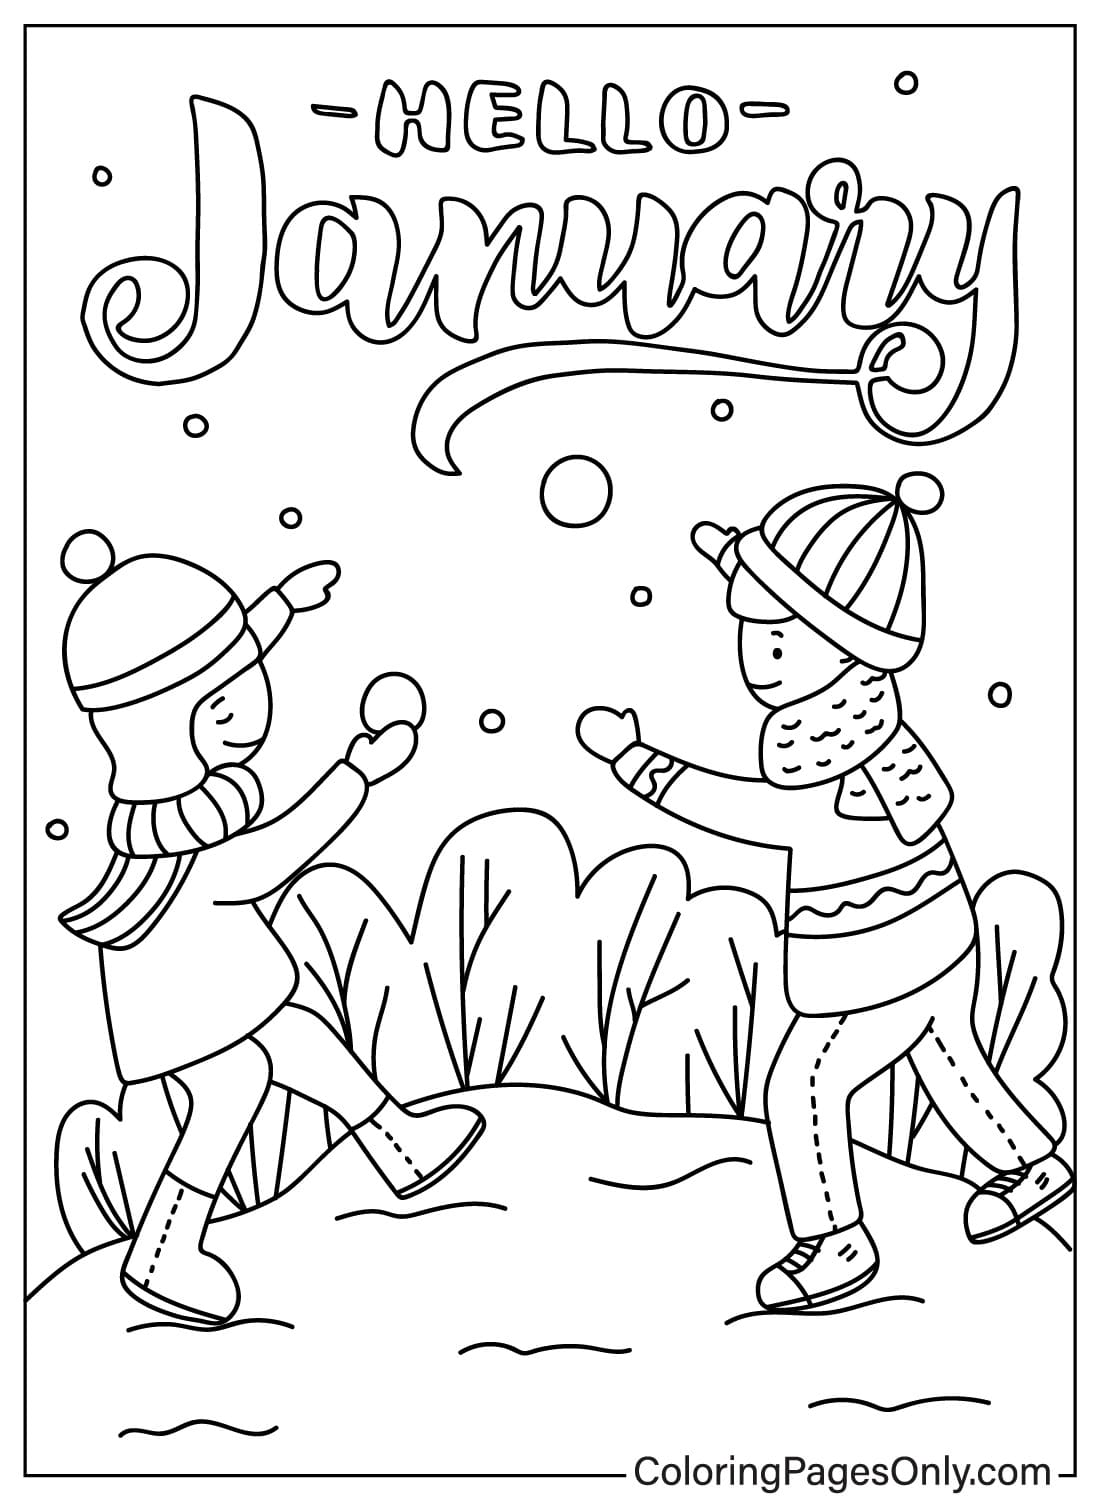 Página para colorear de enero gratis a partir de enero de 2024